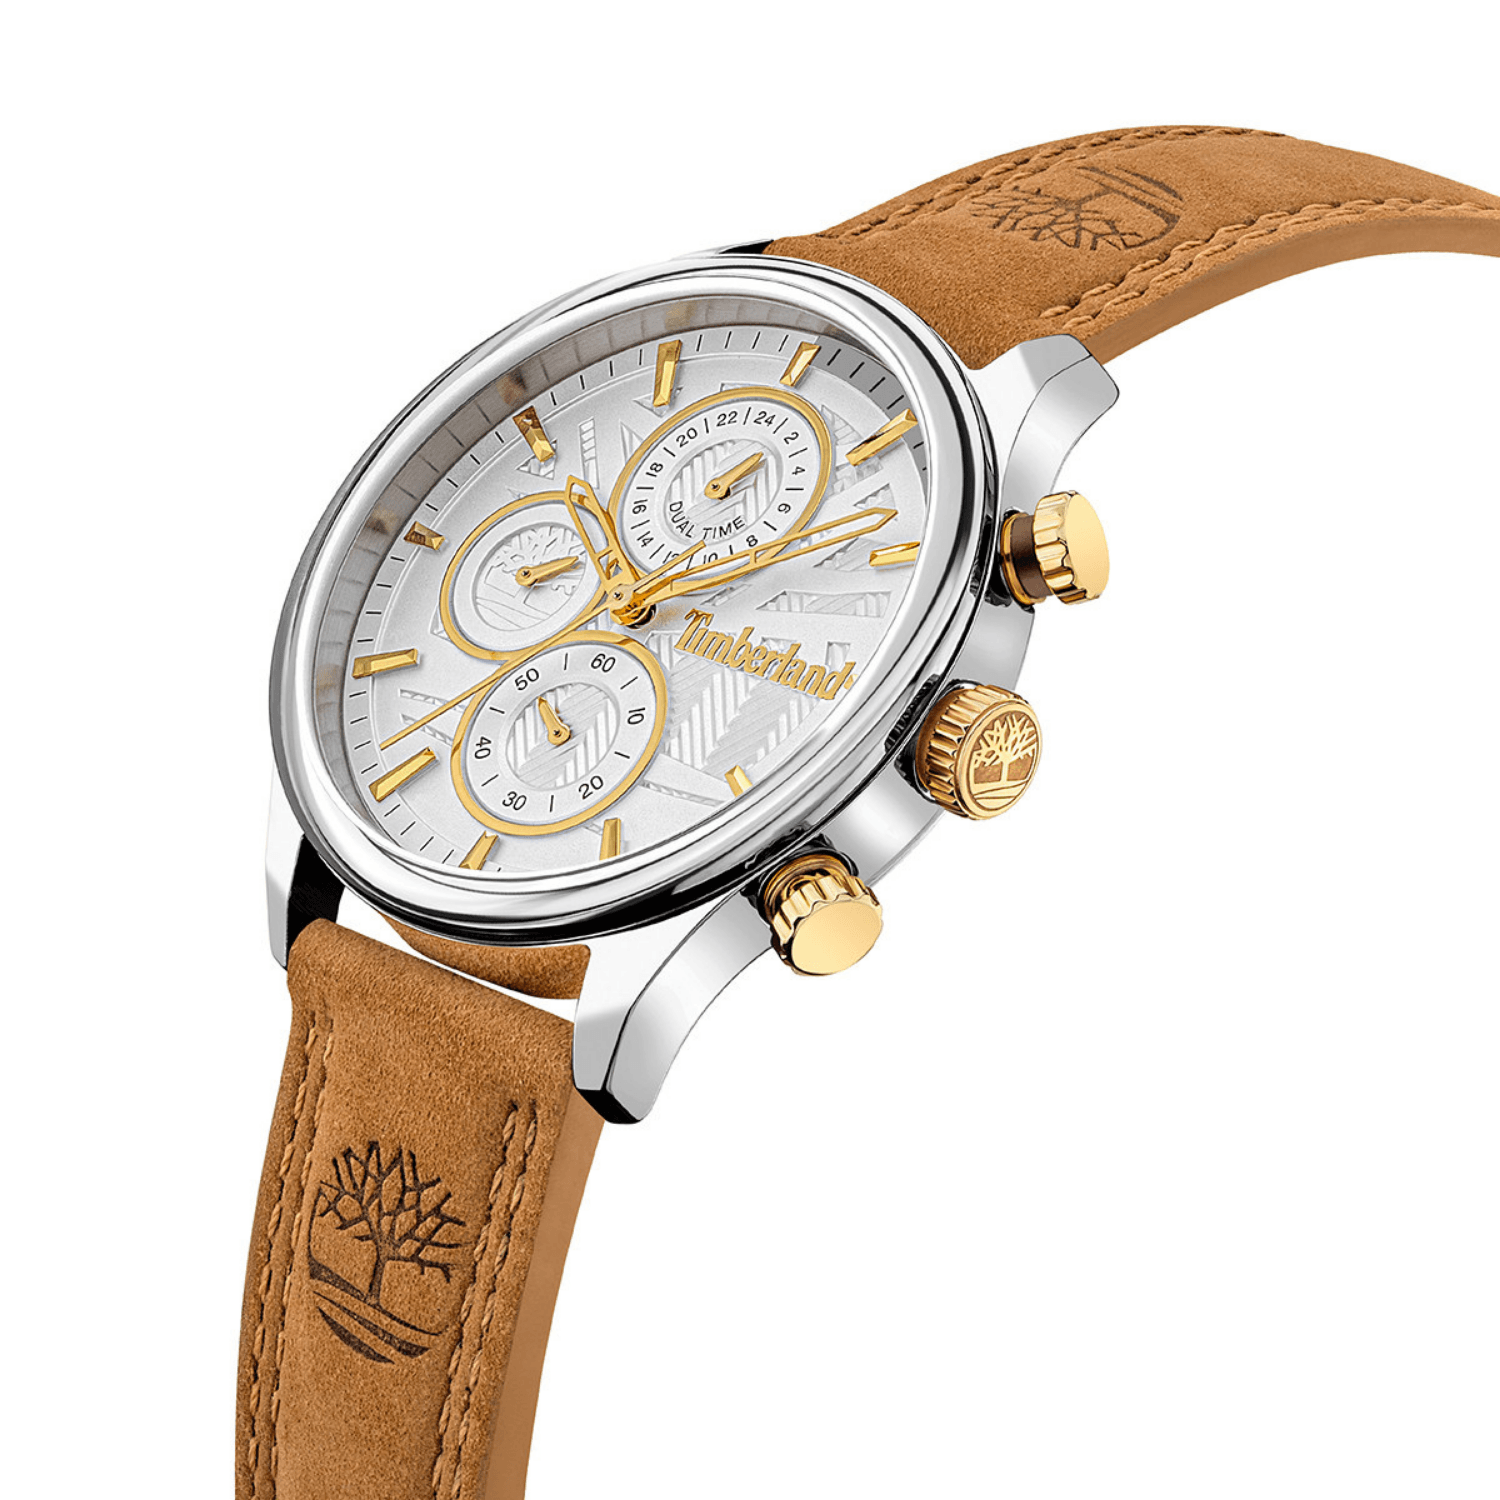 Αντρικό ρολόι Timberland Sheafe TDWLF2104003 με χρονογράφο, ταμπά δερμάτινο λουράκι και άσπρο καντράν διαμέτρου 40mm.